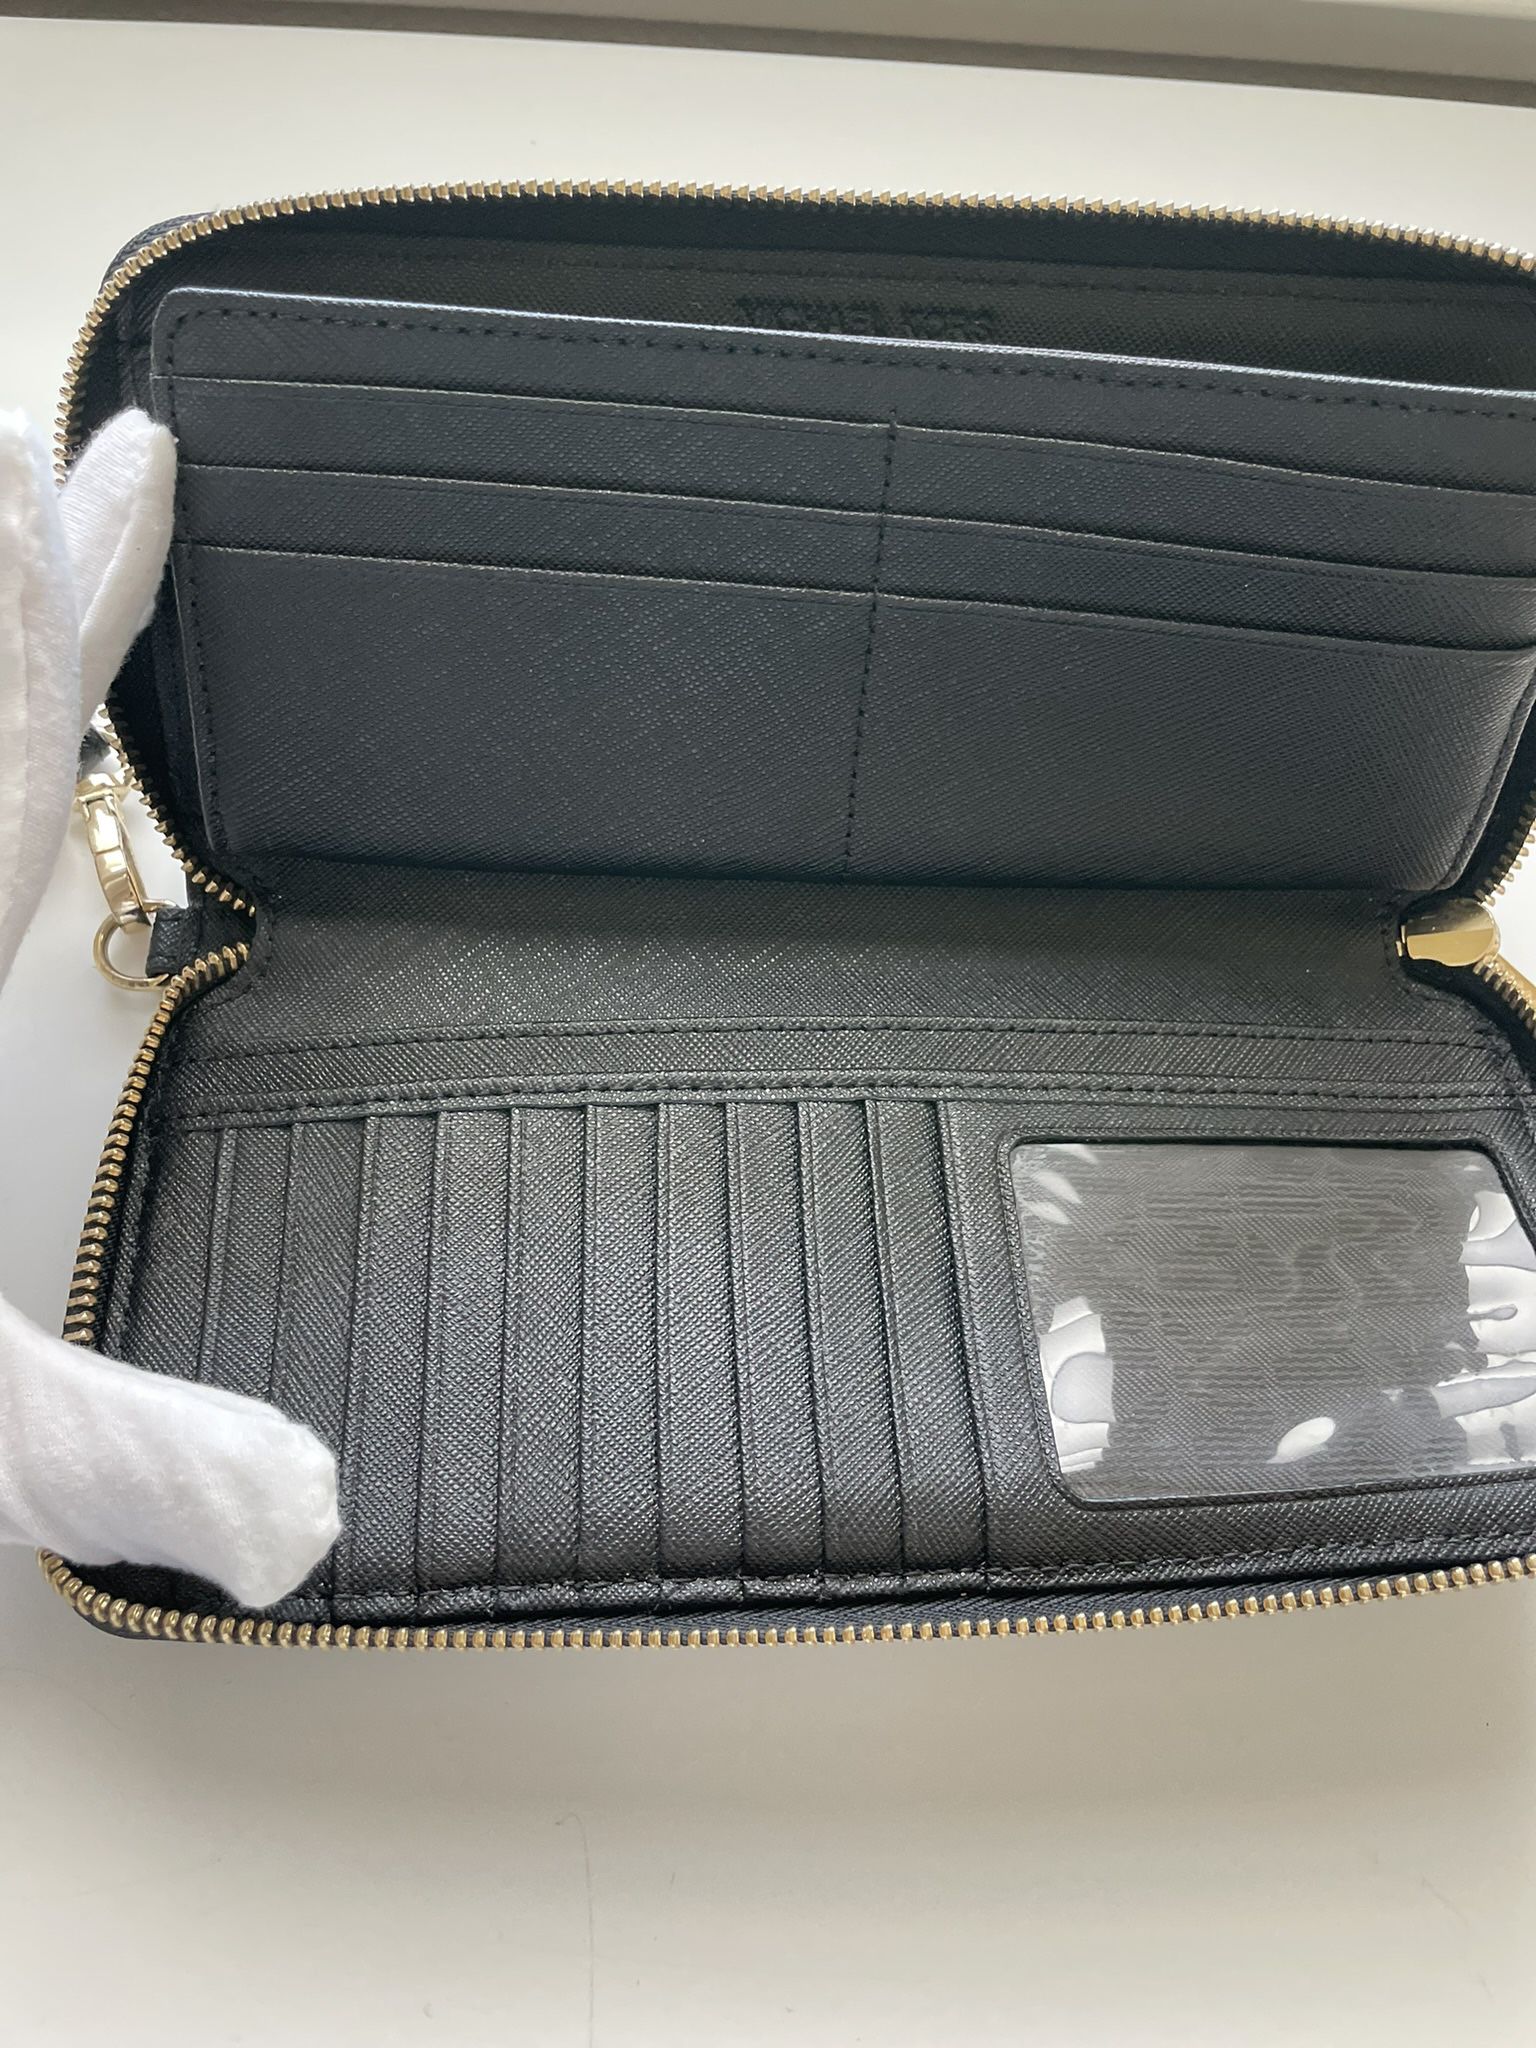 Black Wallet Wristlet Zipper Michael Kors Excellent Condition 